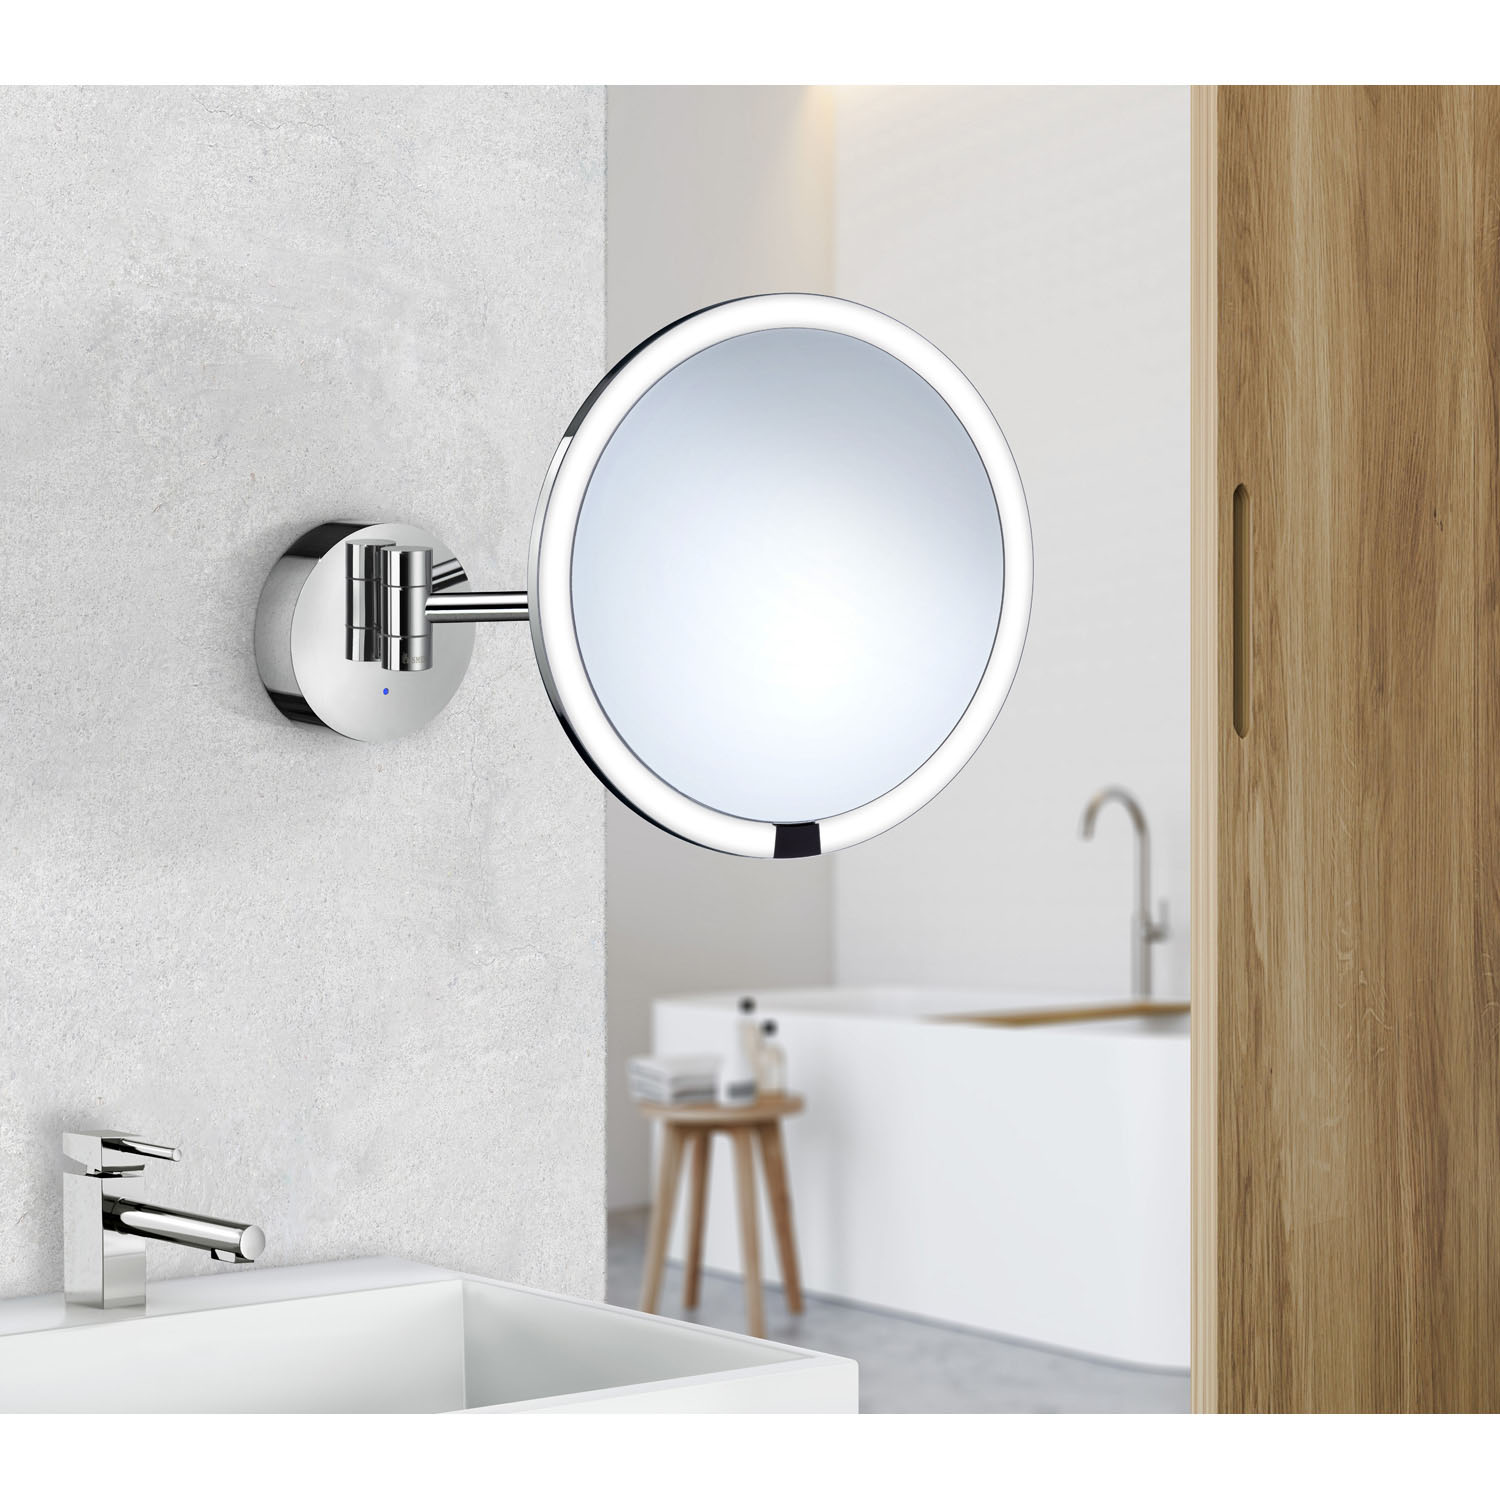 LINGDA Bluetooth Schminkspiegel mit Beleuchtung, Touch-Steuerung,  360°Drehbar 22 x 25 cm Spiegel Kosmetikspiegel